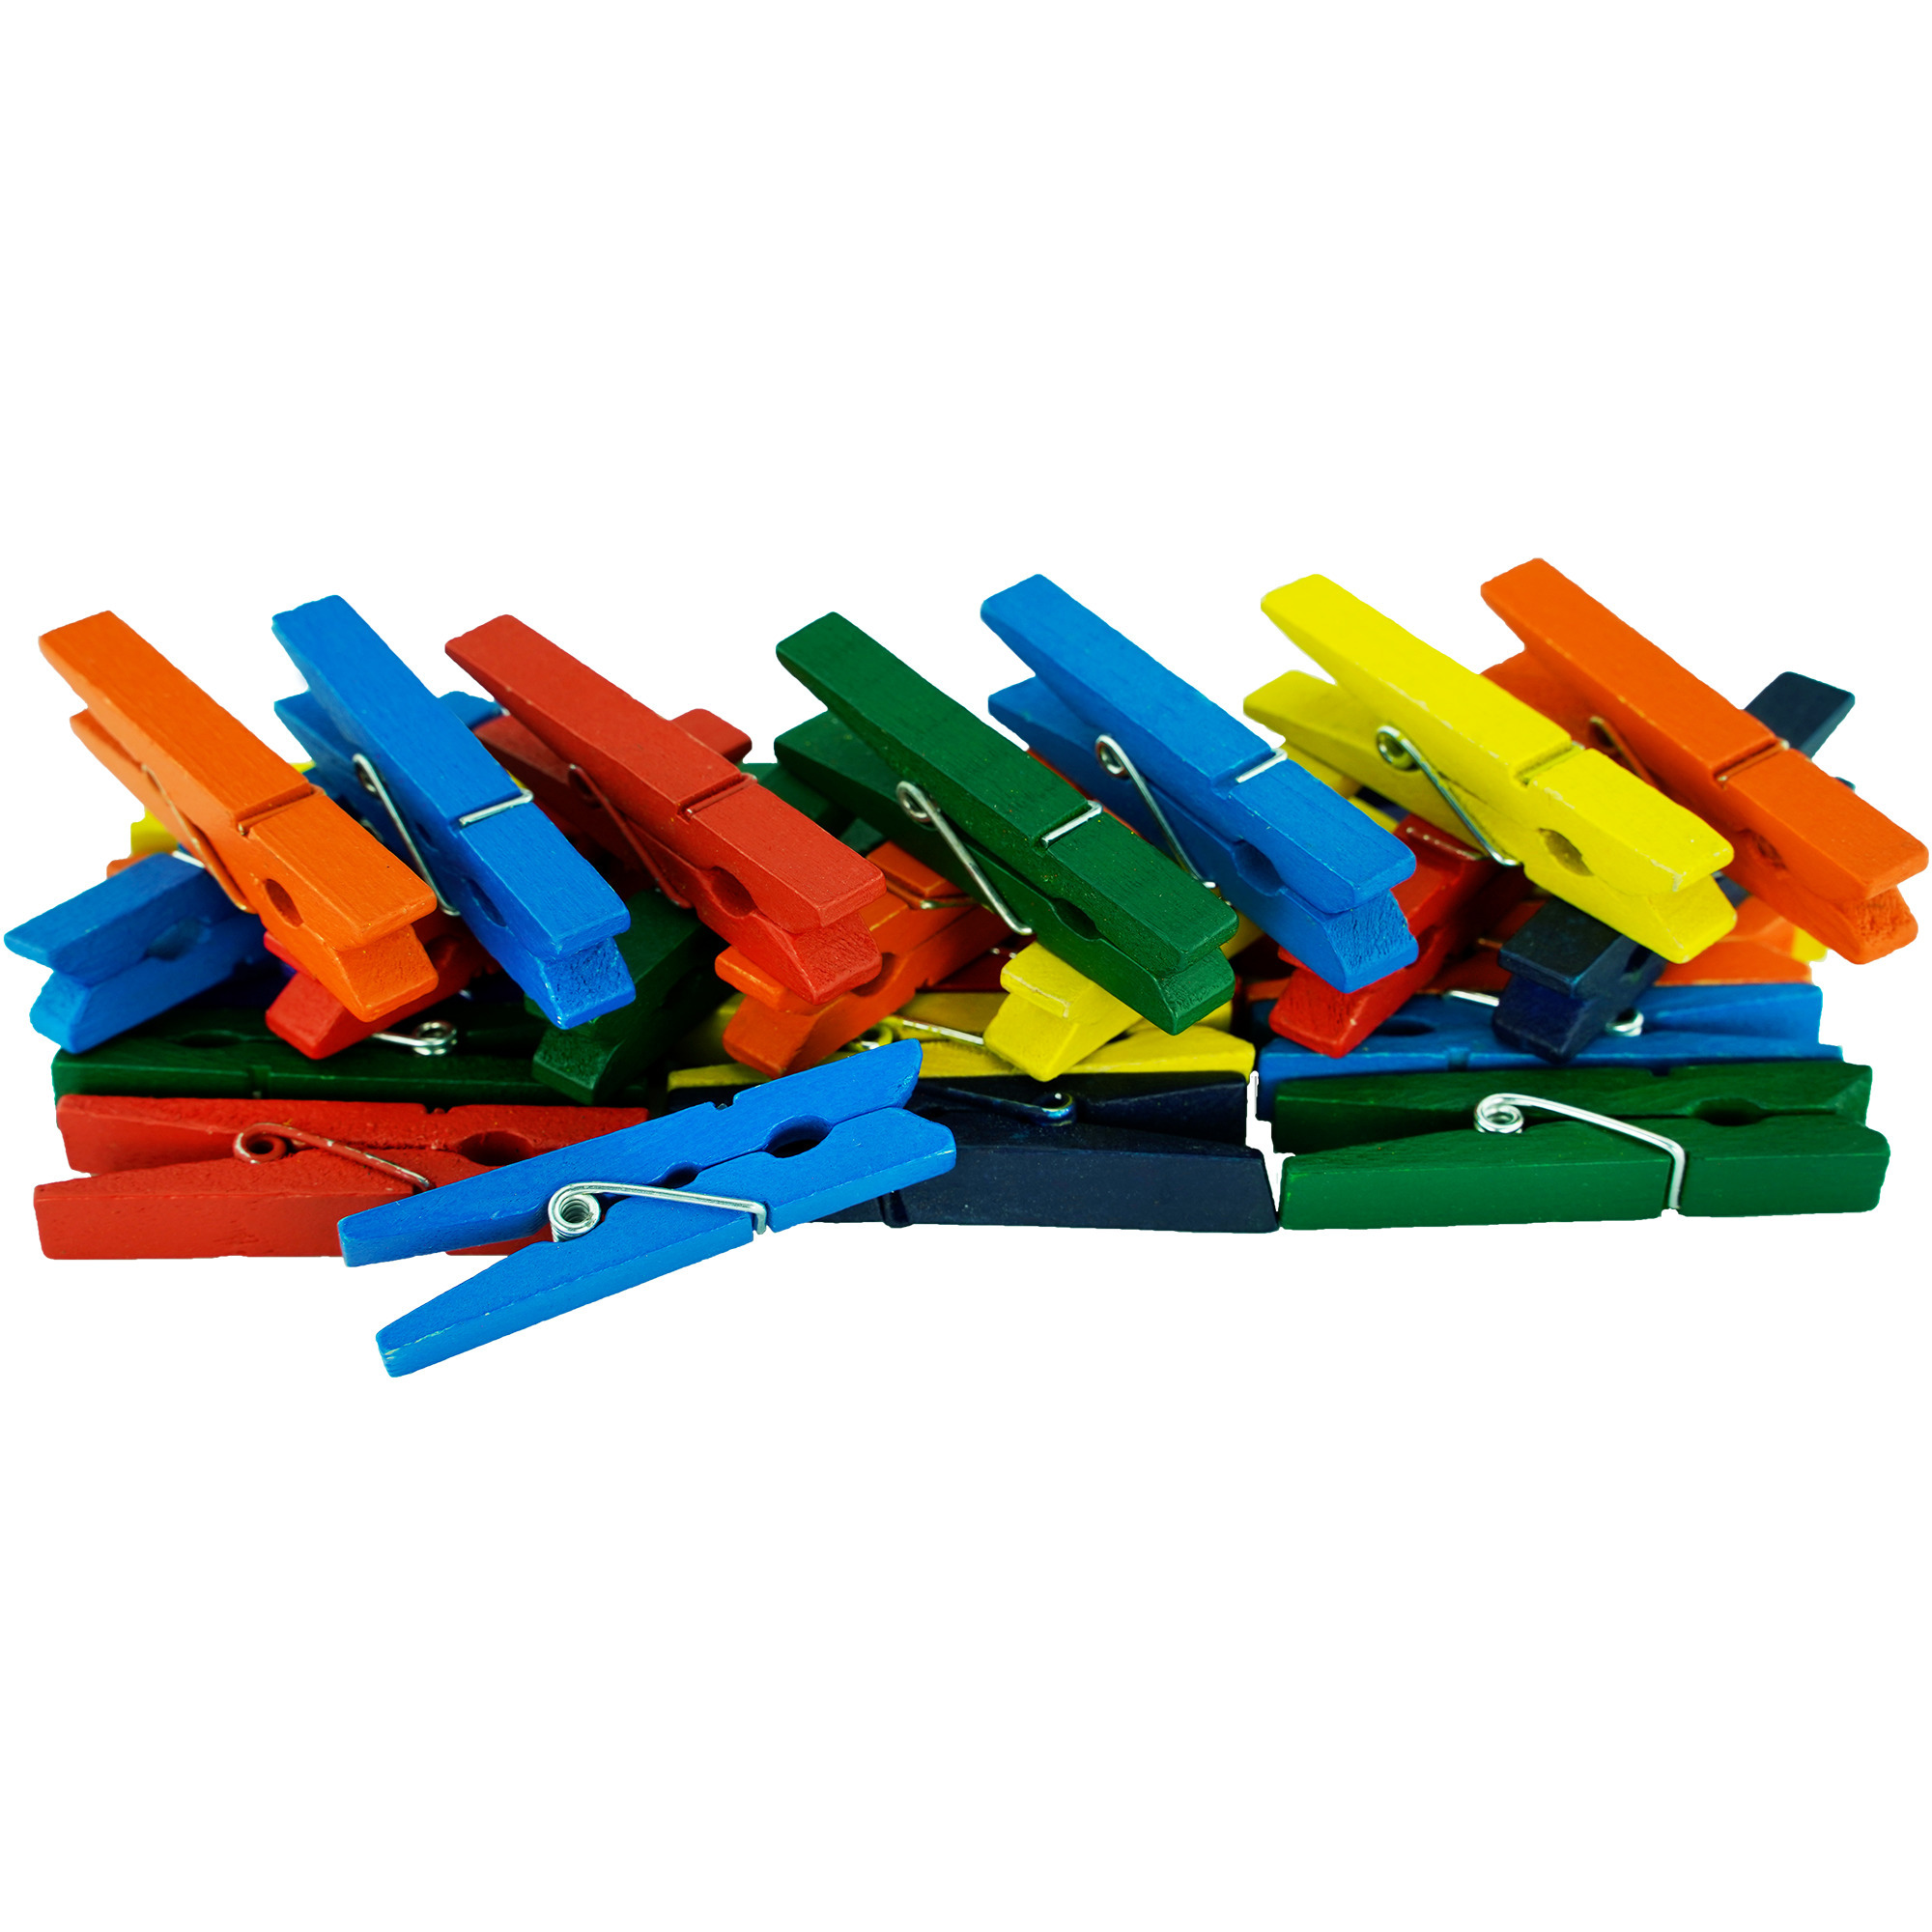 100x stuks multi-color kleur hobby knutselen mini knijpers-knijpertjes 4.5 cm